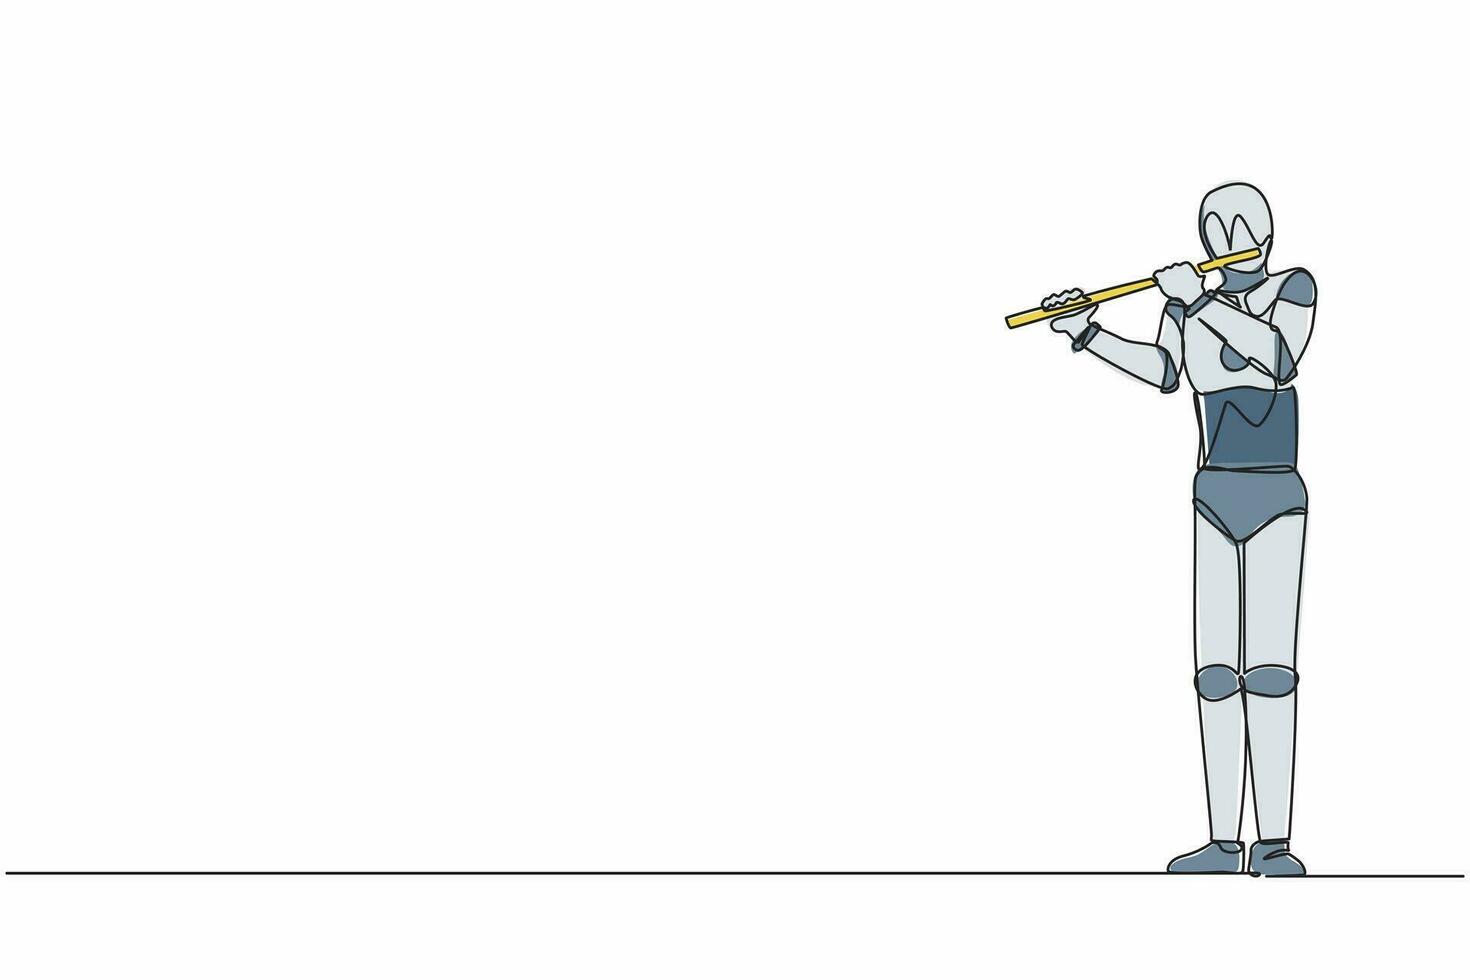 flautista robot de dibujo de una sola línea continua interpretando música clásica en un instrumento de viento. Inteligencia artificial robótica. industria de la tecnología electrónica. ilustración de vector de diseño gráfico de una línea